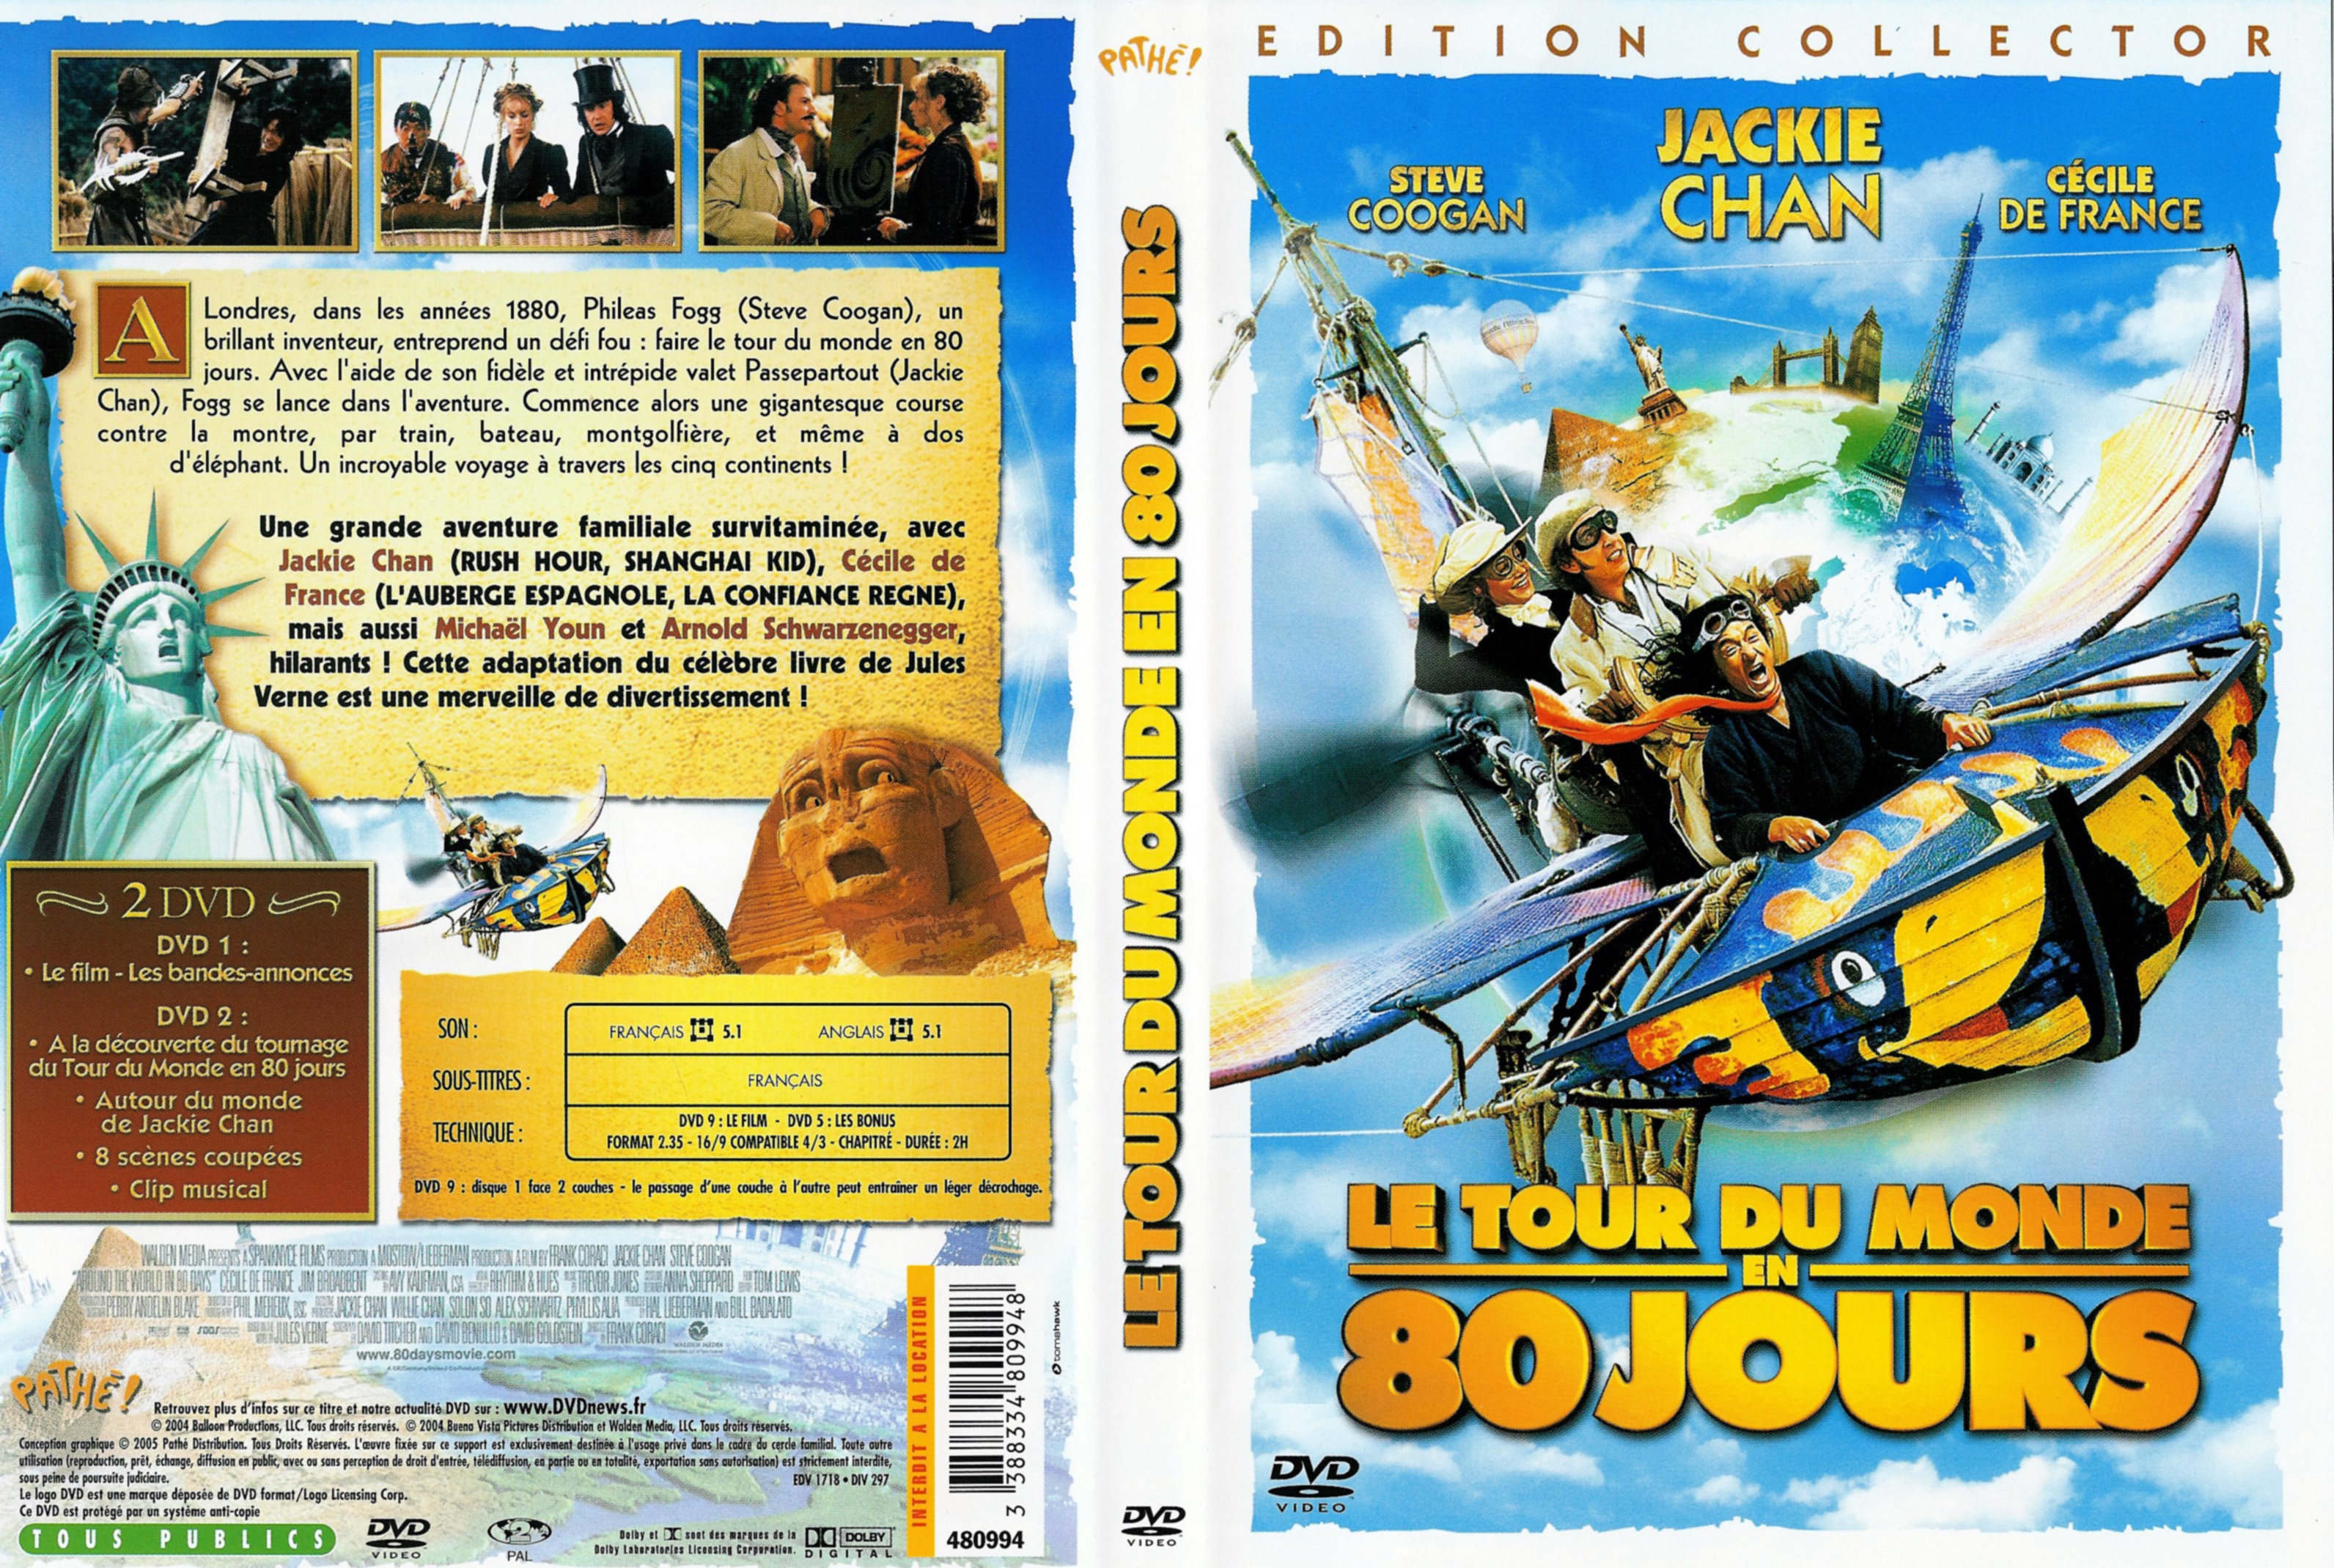 Jaquette DVD Le tour du monde en 80 jours 2004